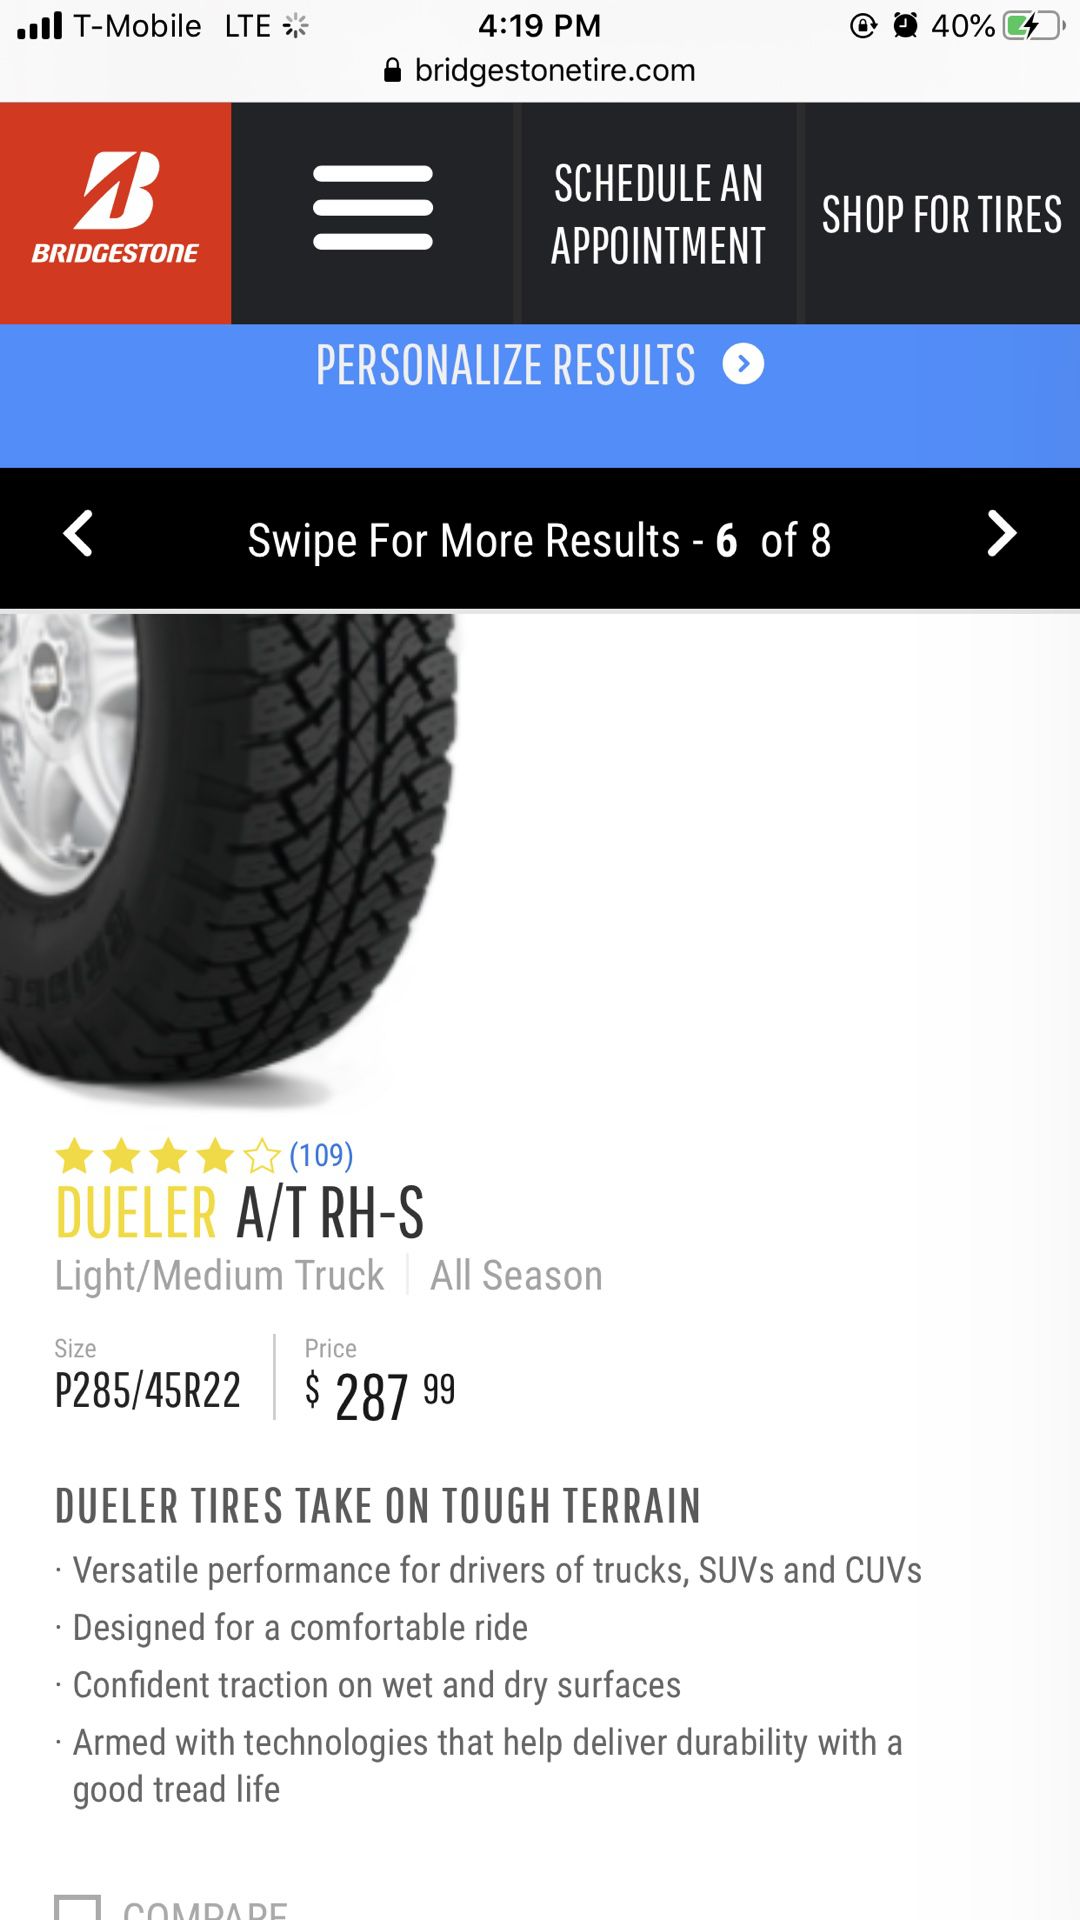 Tires Dueler A/T RH-S